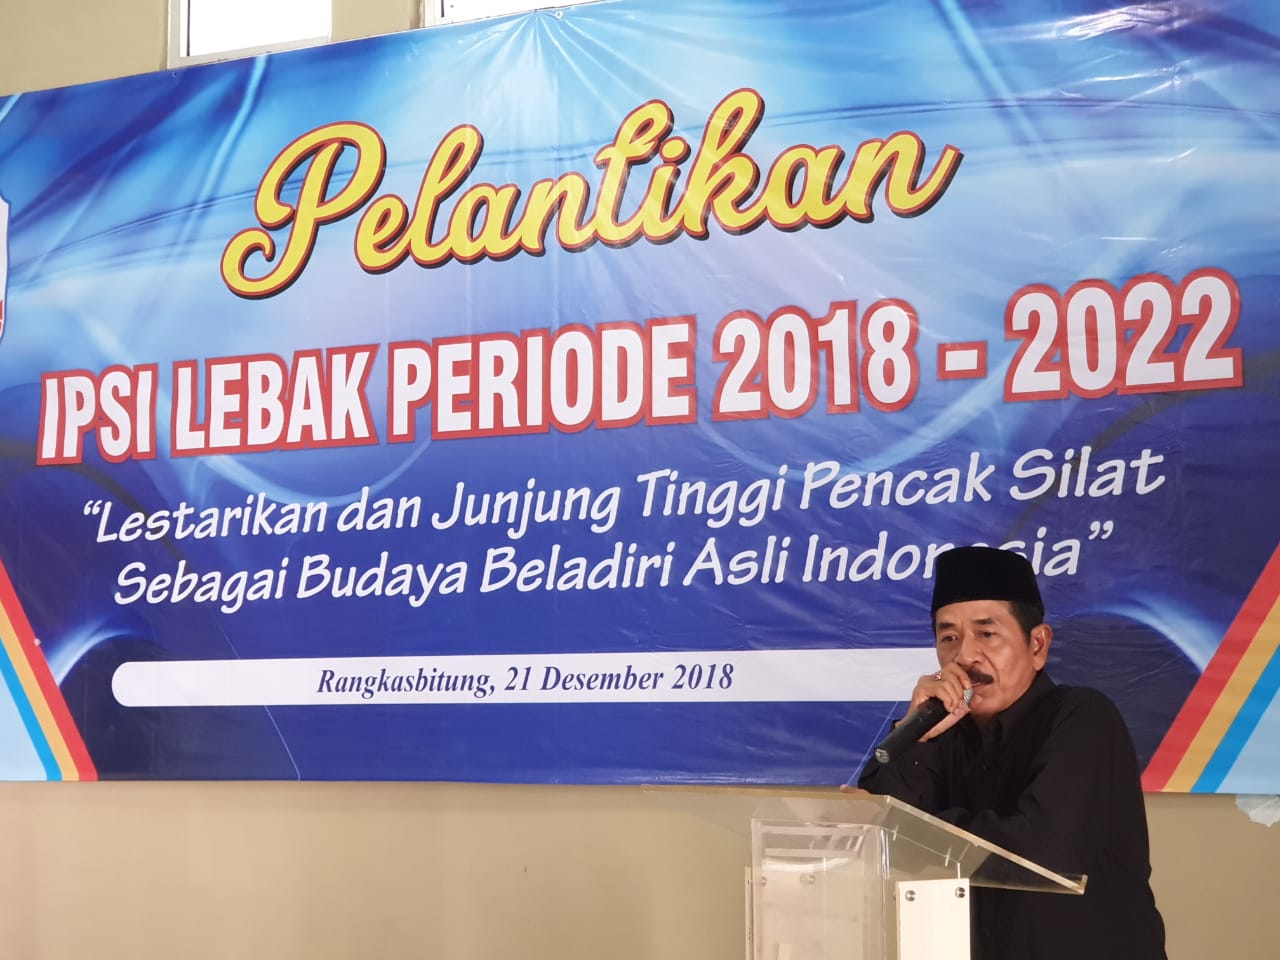 Maman Suparman Kembali Jabat Ketua IPSI Kabupaten Lebak Periode 2018-2022